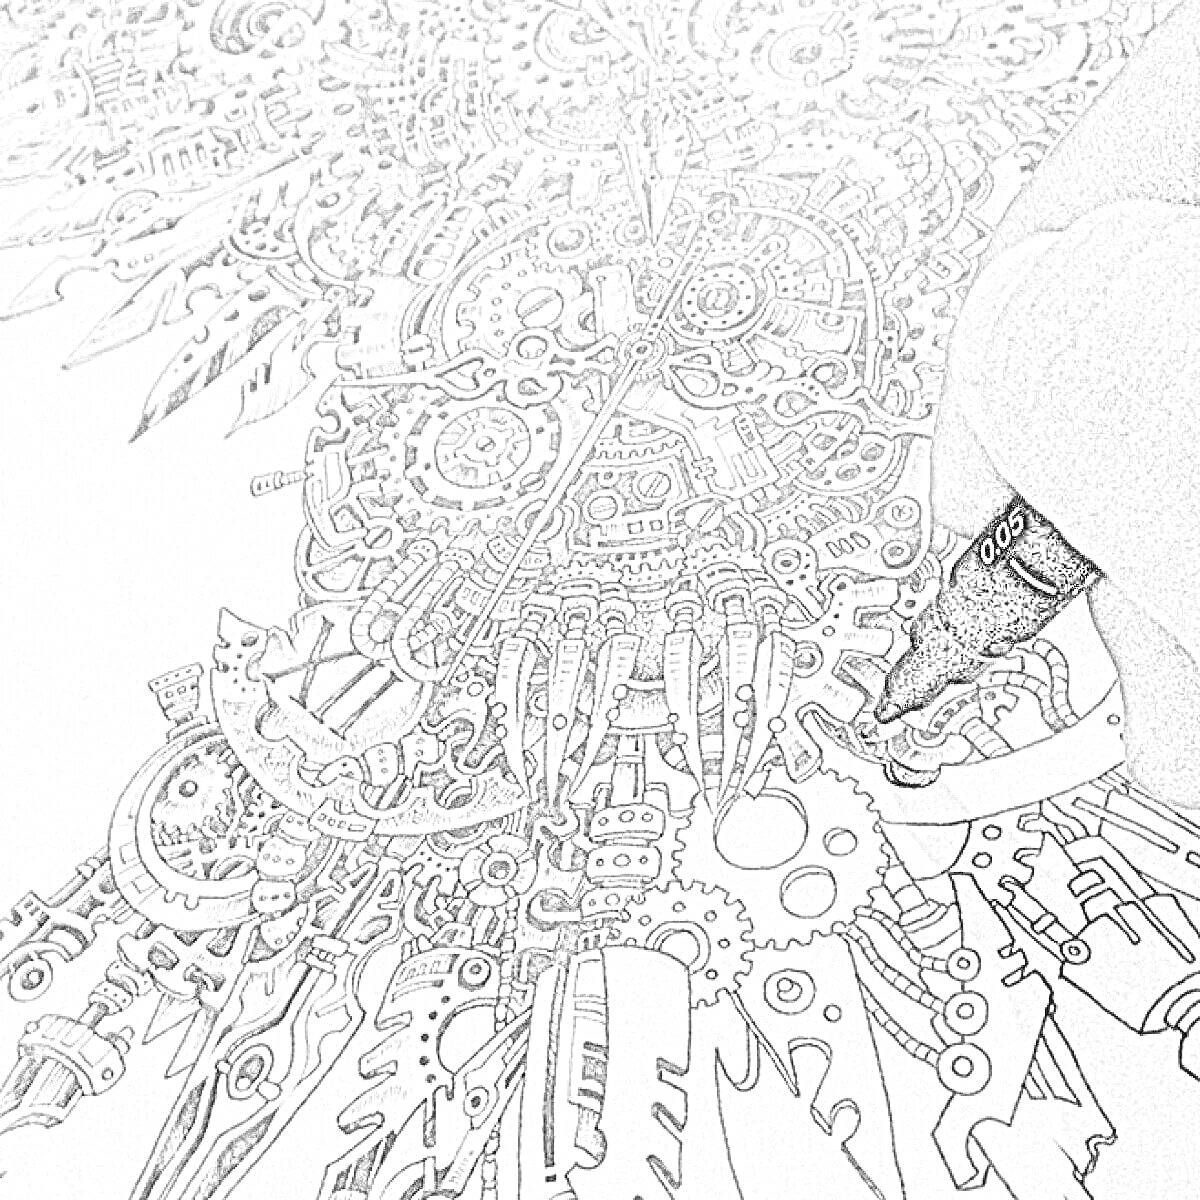 Раскраска Рисование деталей механизма черной ручкой на черно-белом рисунке